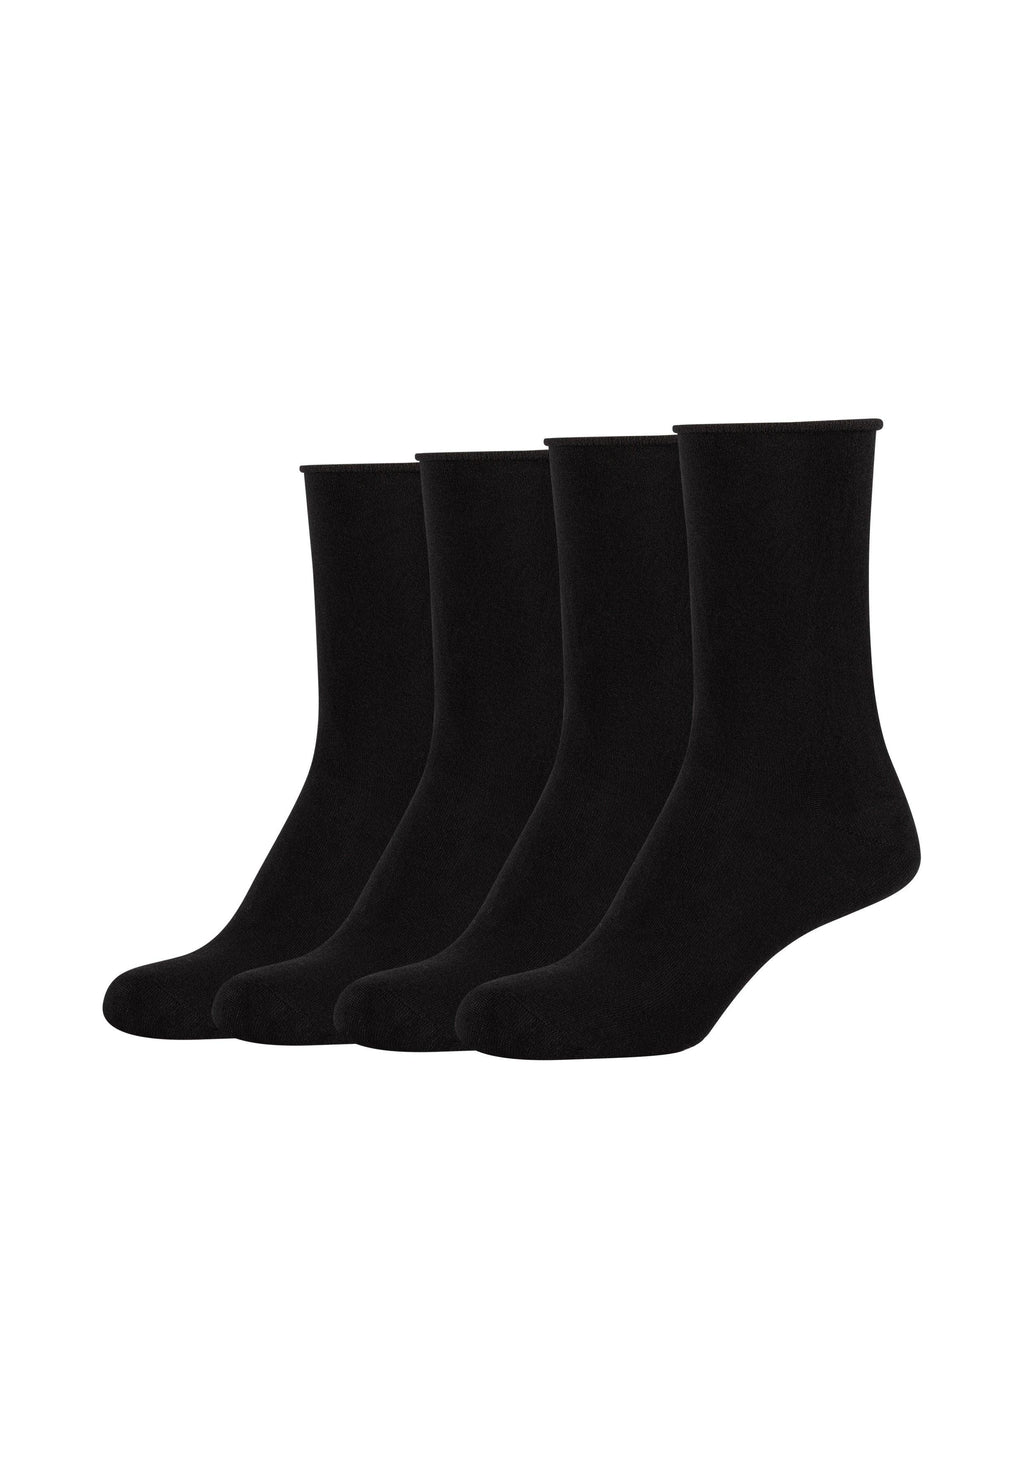 Socken Silky touch 4er – ONSKINERY Pack